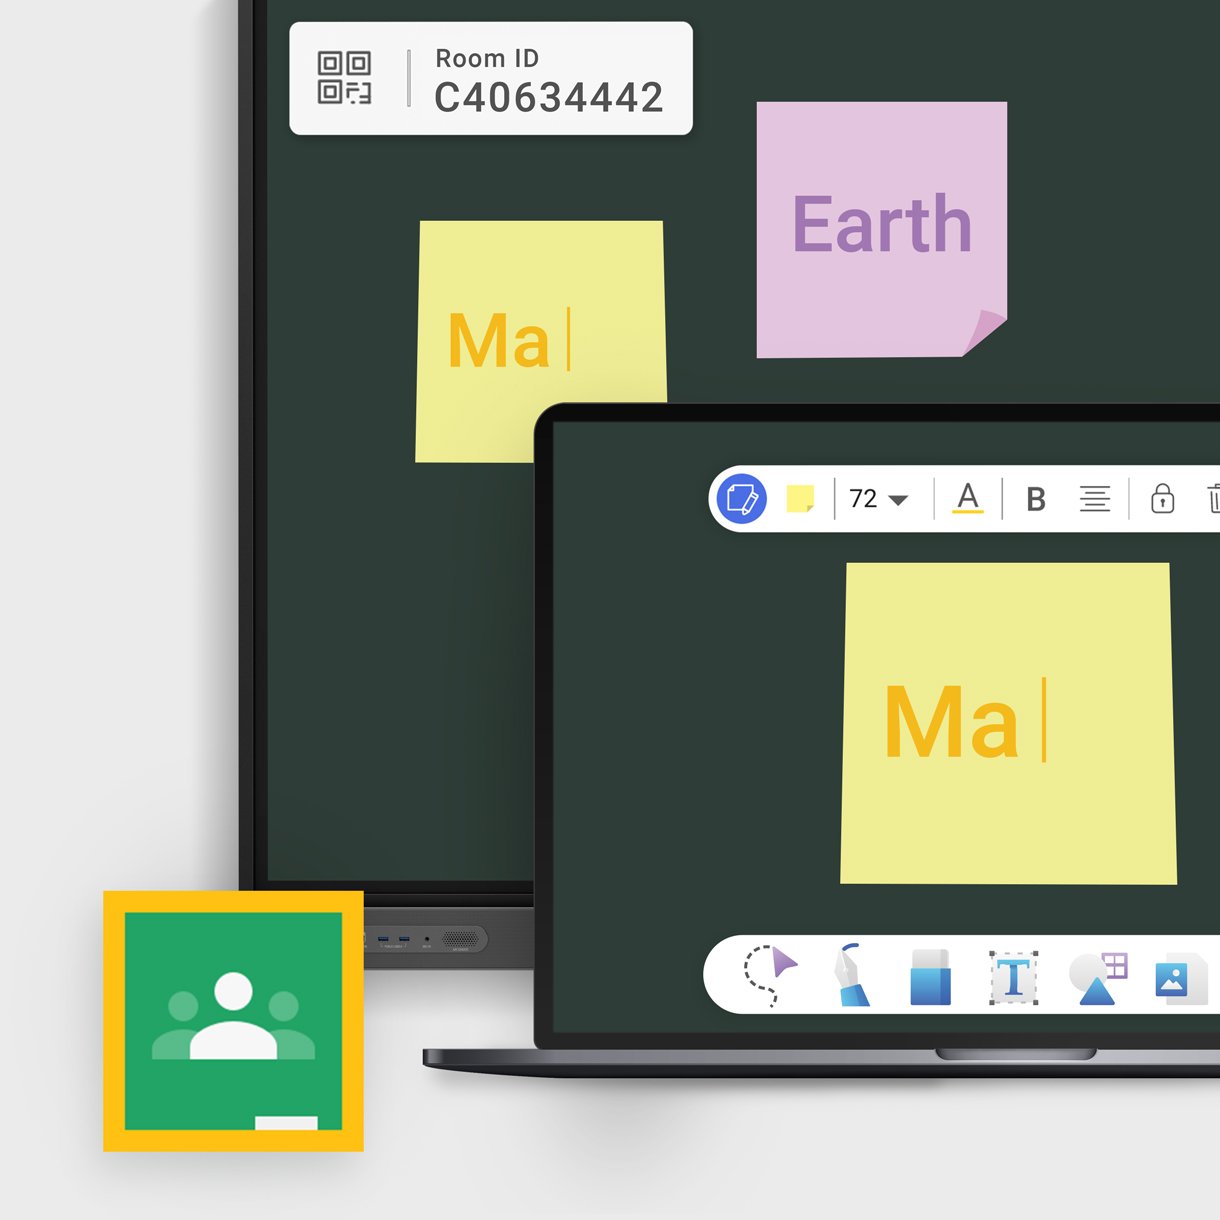 BenQ | Díky integraci se službou Google Classroom můžete importovat výukové materiály a zvát žáky k připojení k softwaru EZWrite 6. Přímo z displeje můžete zveřejňovat oznámení do streamu pro vaši třídu.